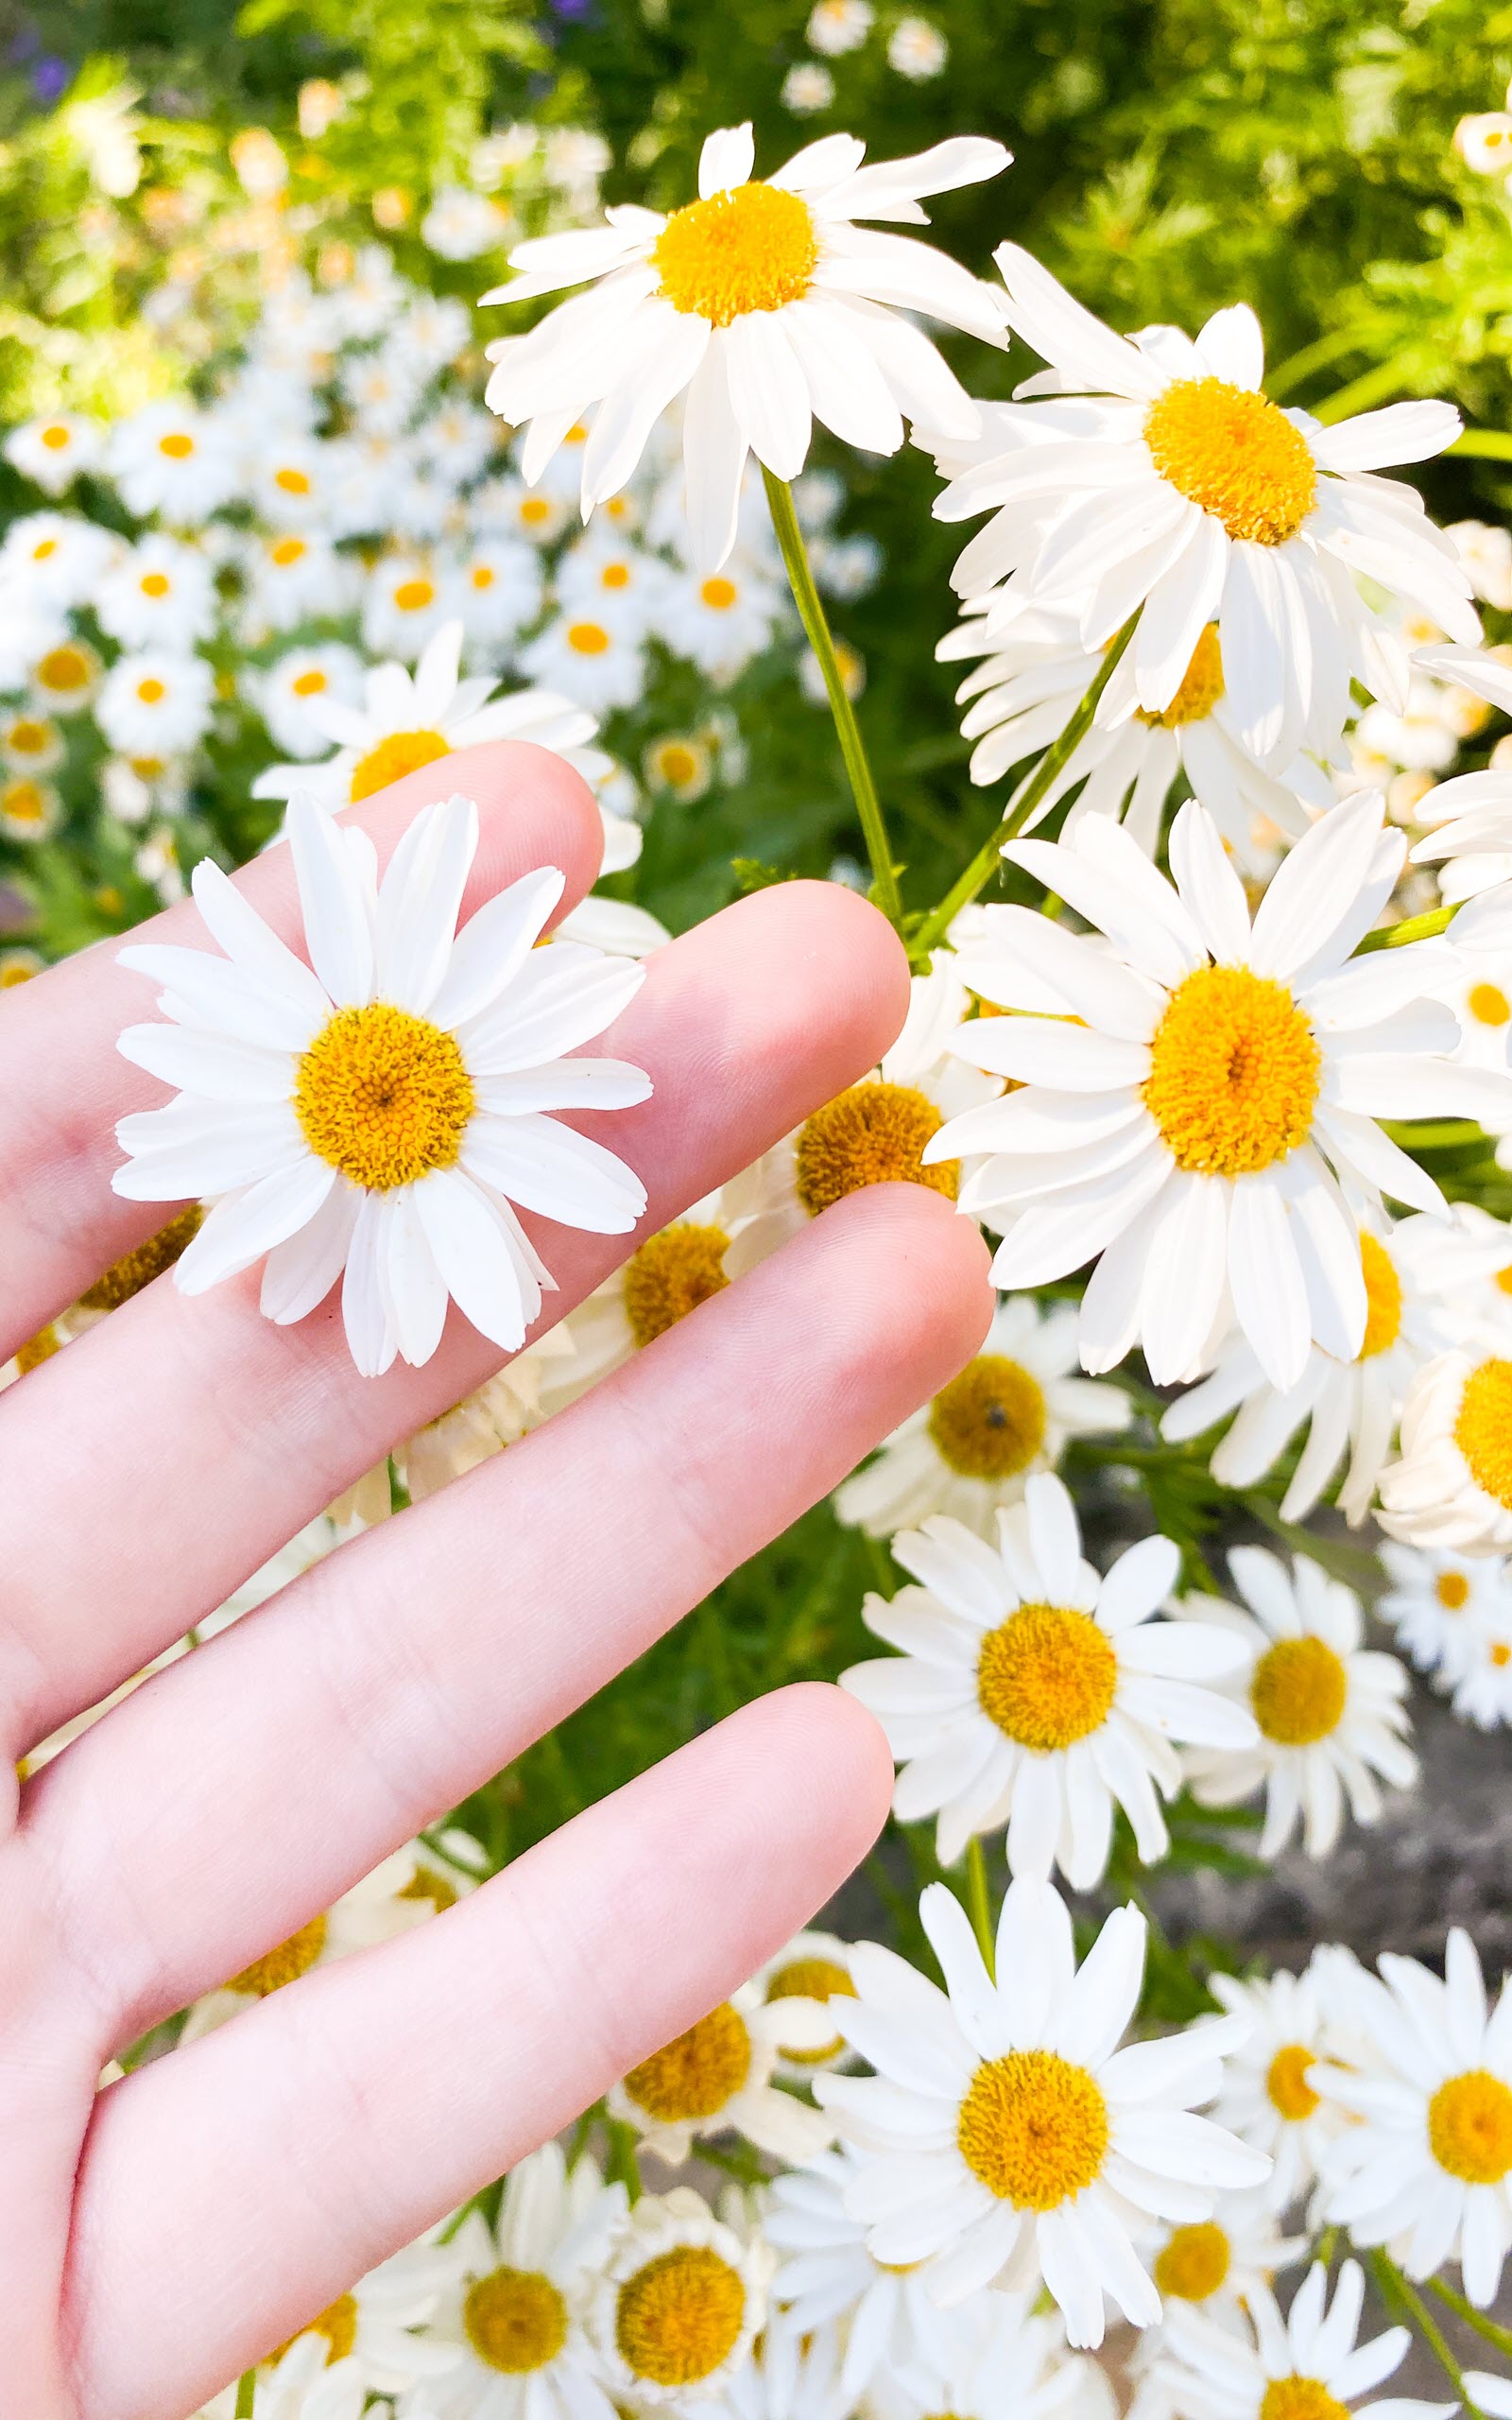 200 hình nền hoa cúc đẹp như GDragon cho điện thoại máy tính 2020   BlogAnChoi  Hoa cúc Nhiếp ảnh ngoài trời Nhiếp ảnh trừu tượng